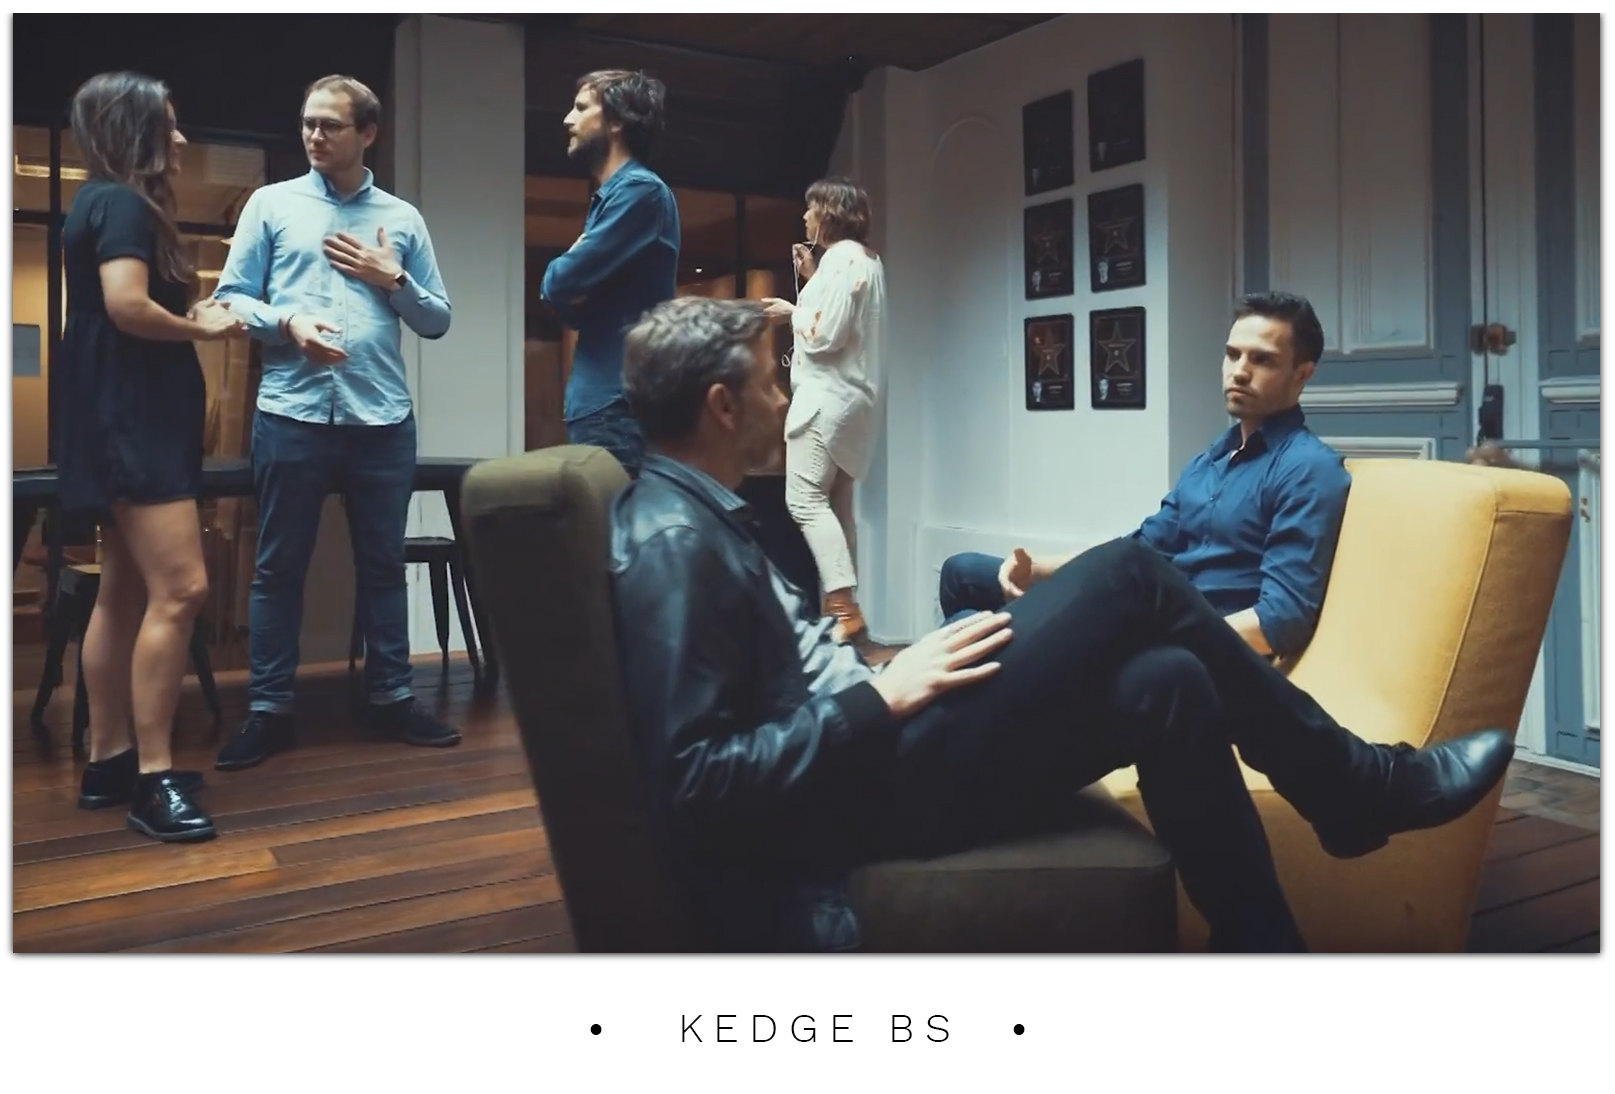 KEDGE BS